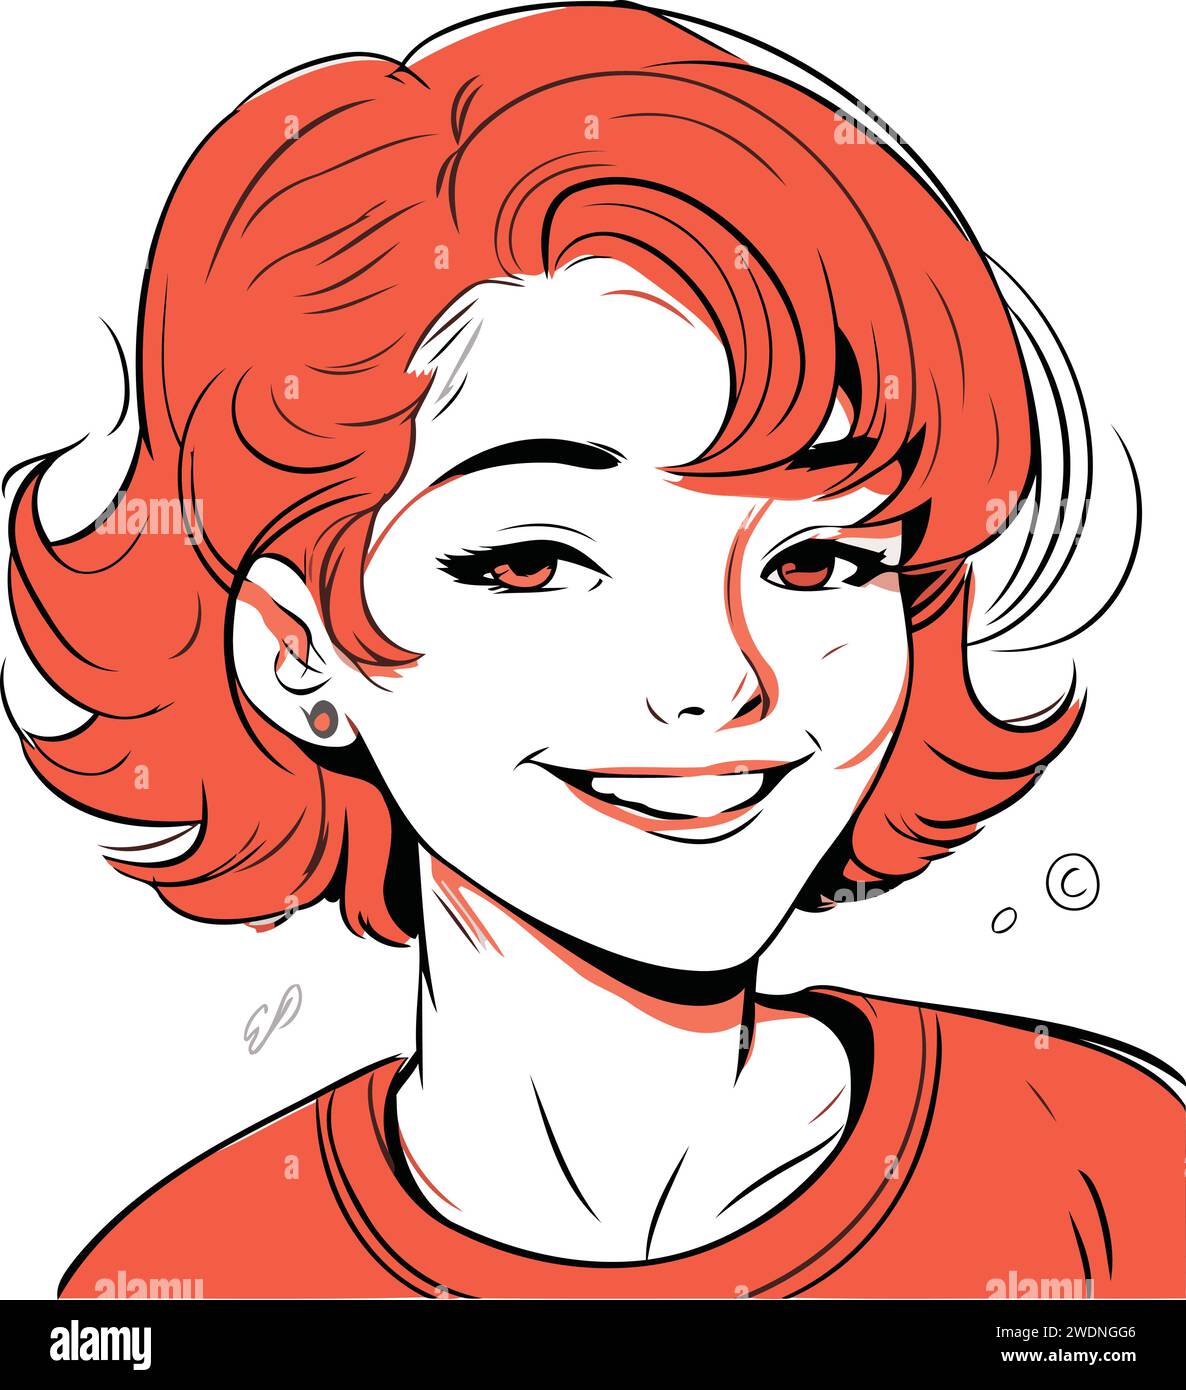 Ritratto di una bella ragazza sorridente con i capelli rossi. Illustrazione vettoriale. Illustrazione Vettoriale